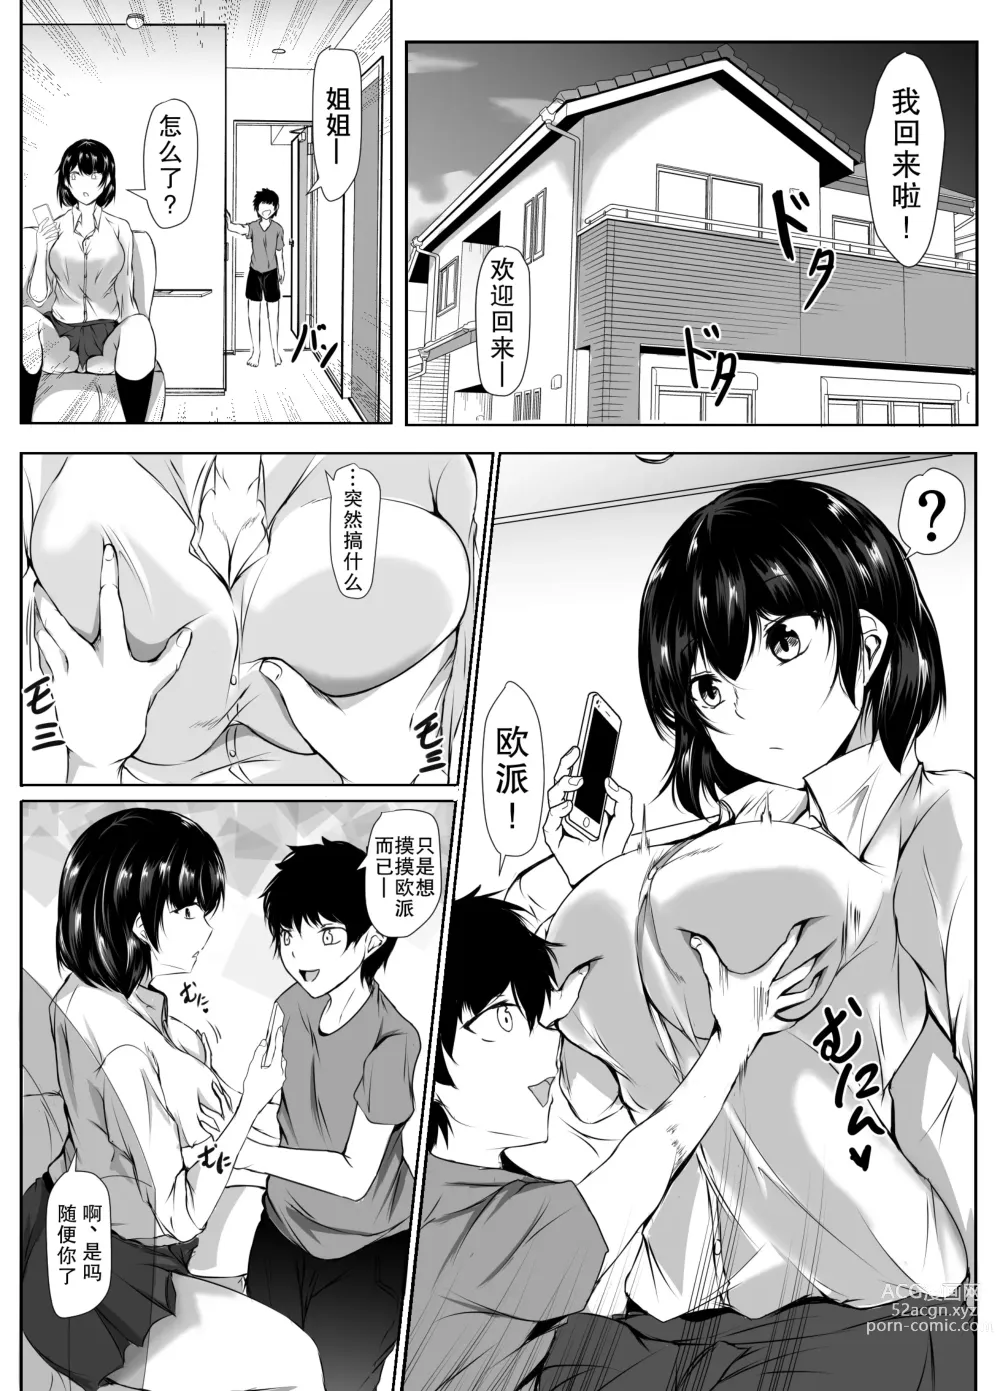 Page 2 of doujinshi 对弟弟的色情恶作剧过于宽容的懒散姐姐